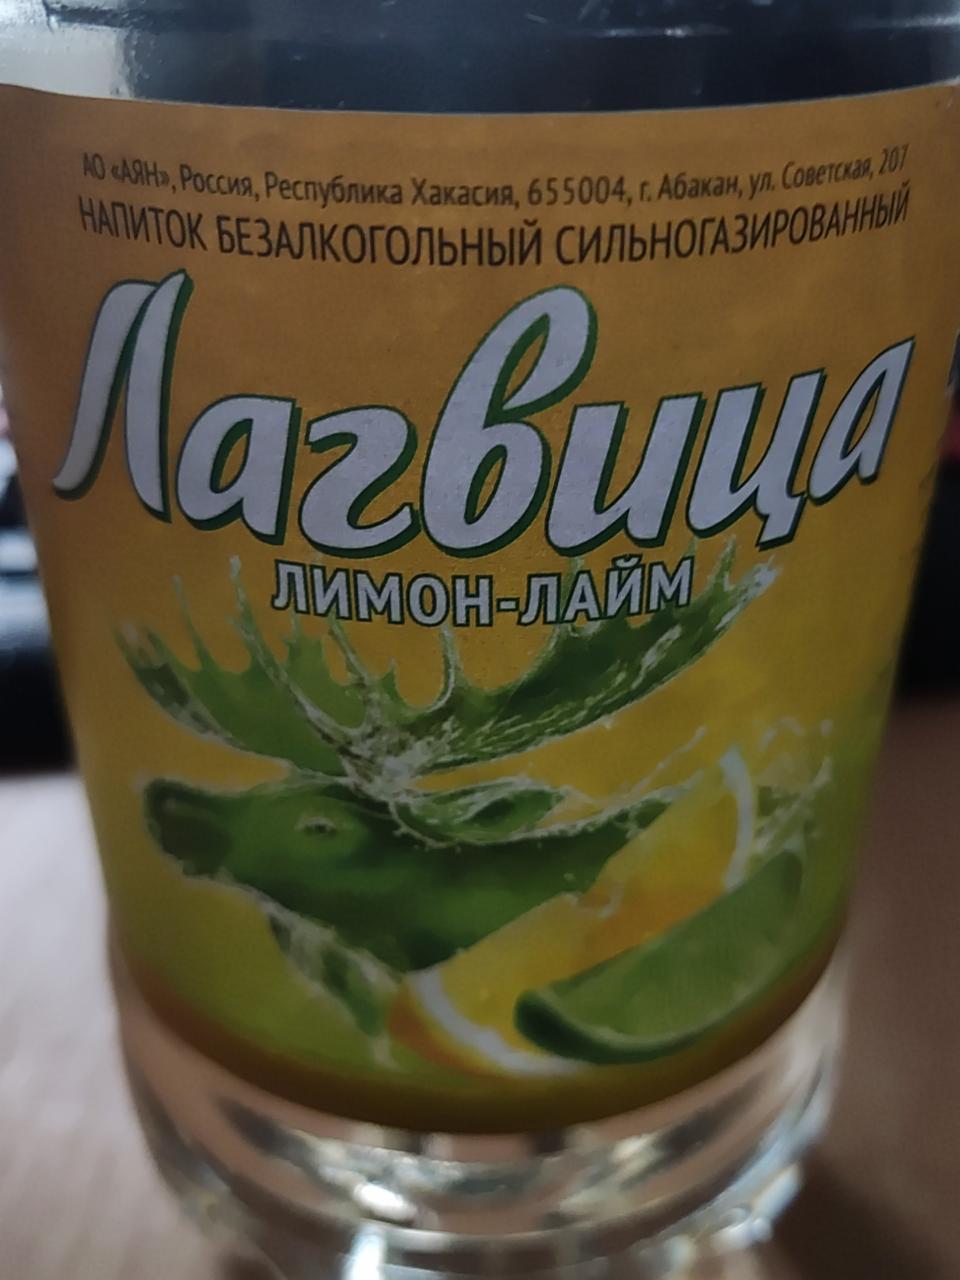 Фото - напиток безалкольный сильногазированный лимон-лайм Лагвица